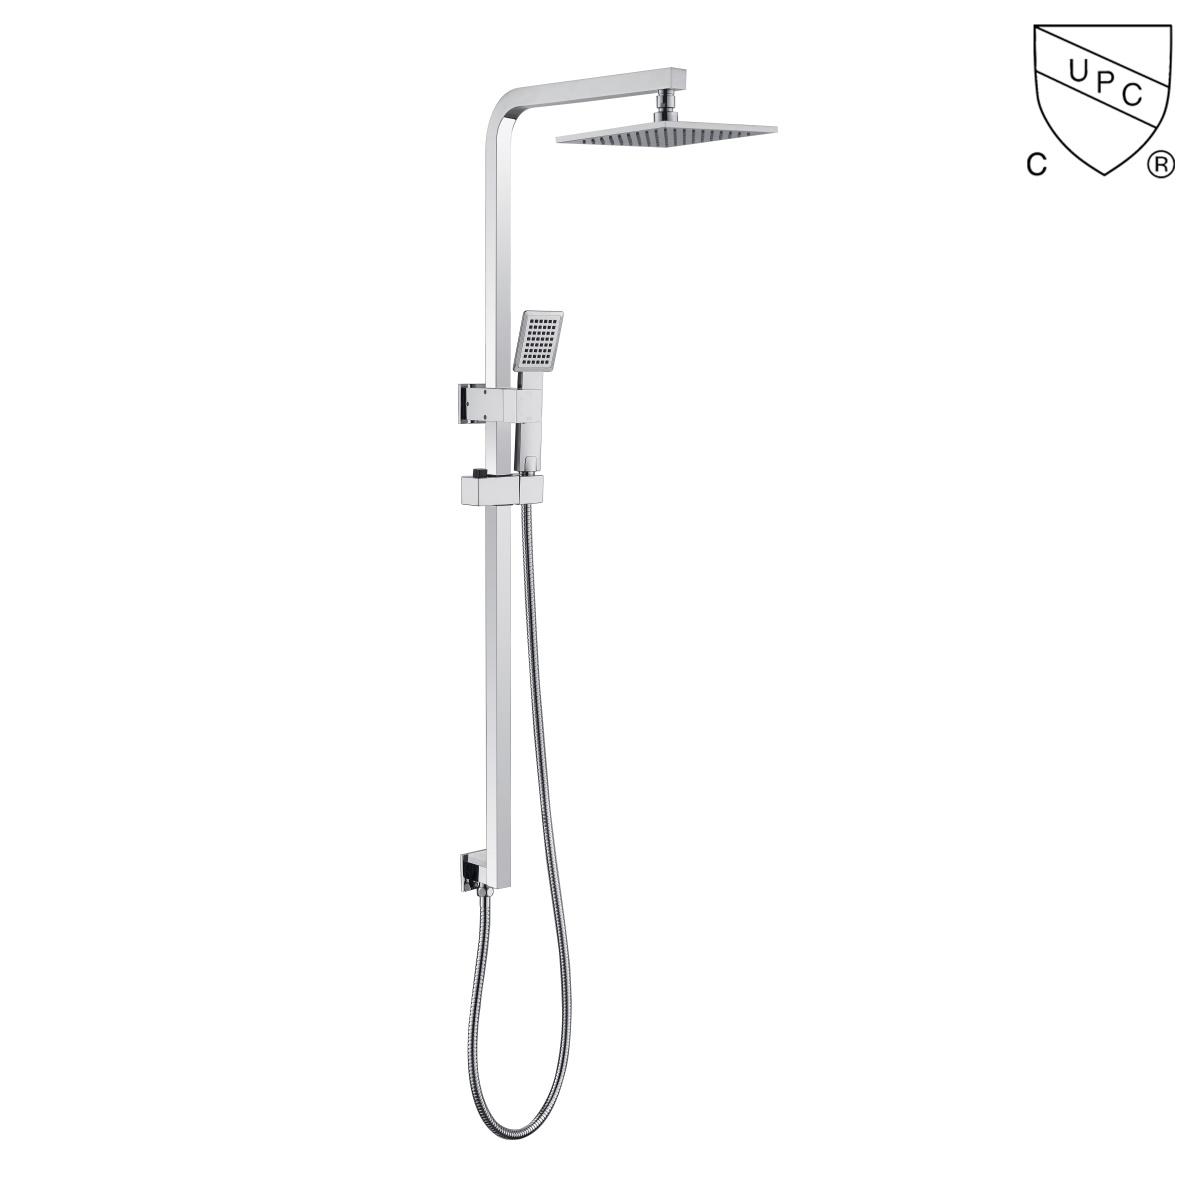 DA310022CP UPC, kit doccia certificati CUPC, set doccia a pioggia, set doccia scorrevole;